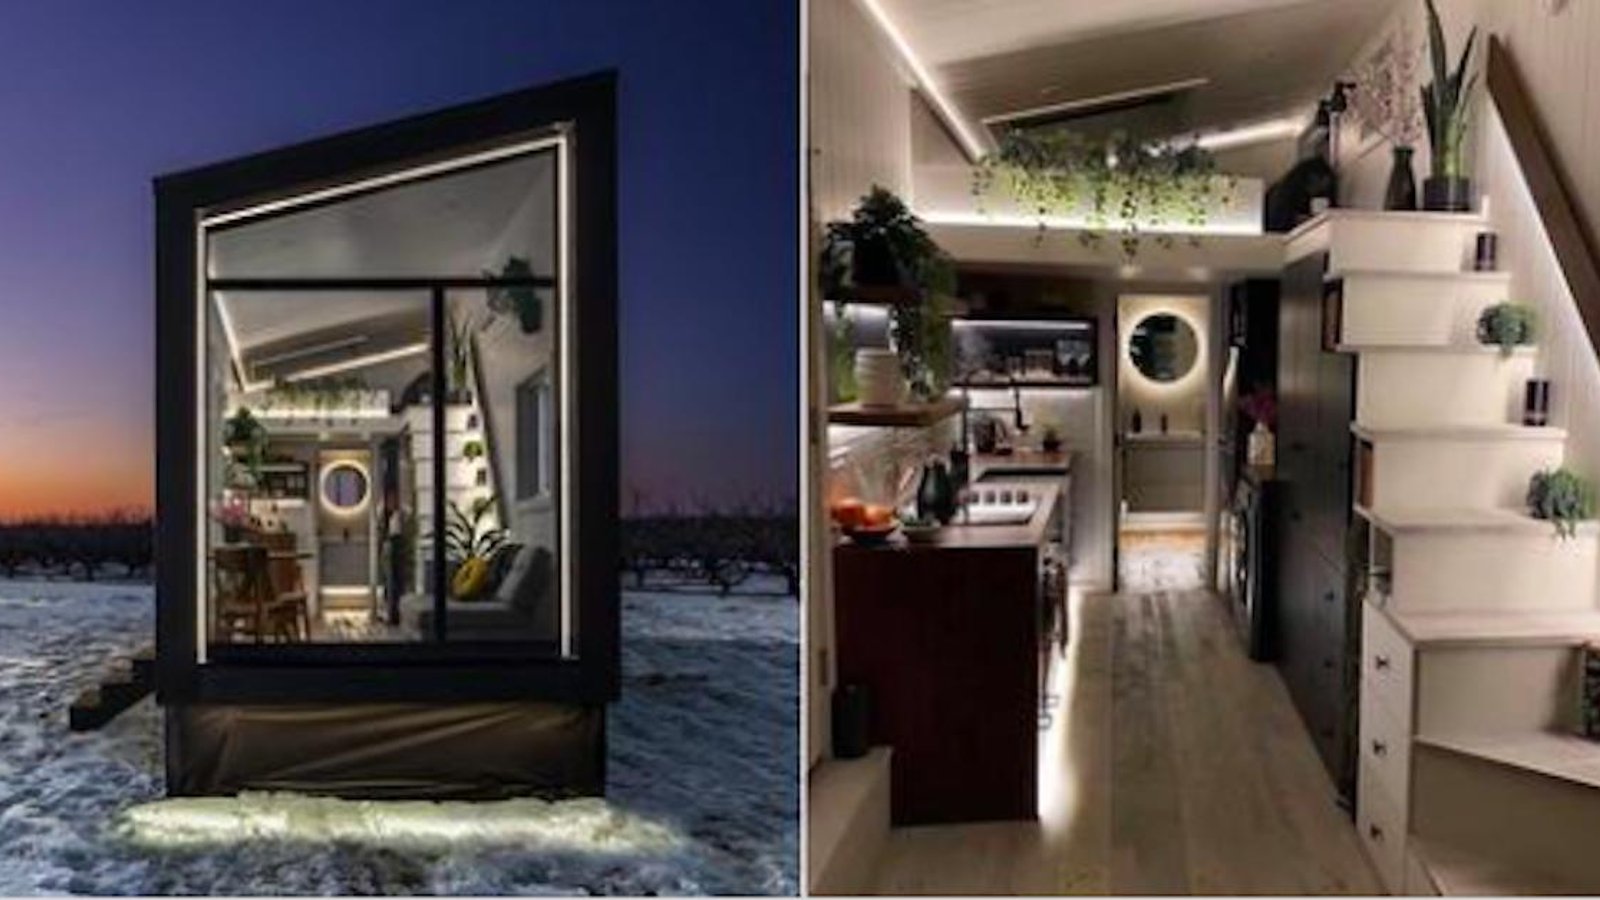 Voici une superbe mini-maison de 24 m² entièrement équipée